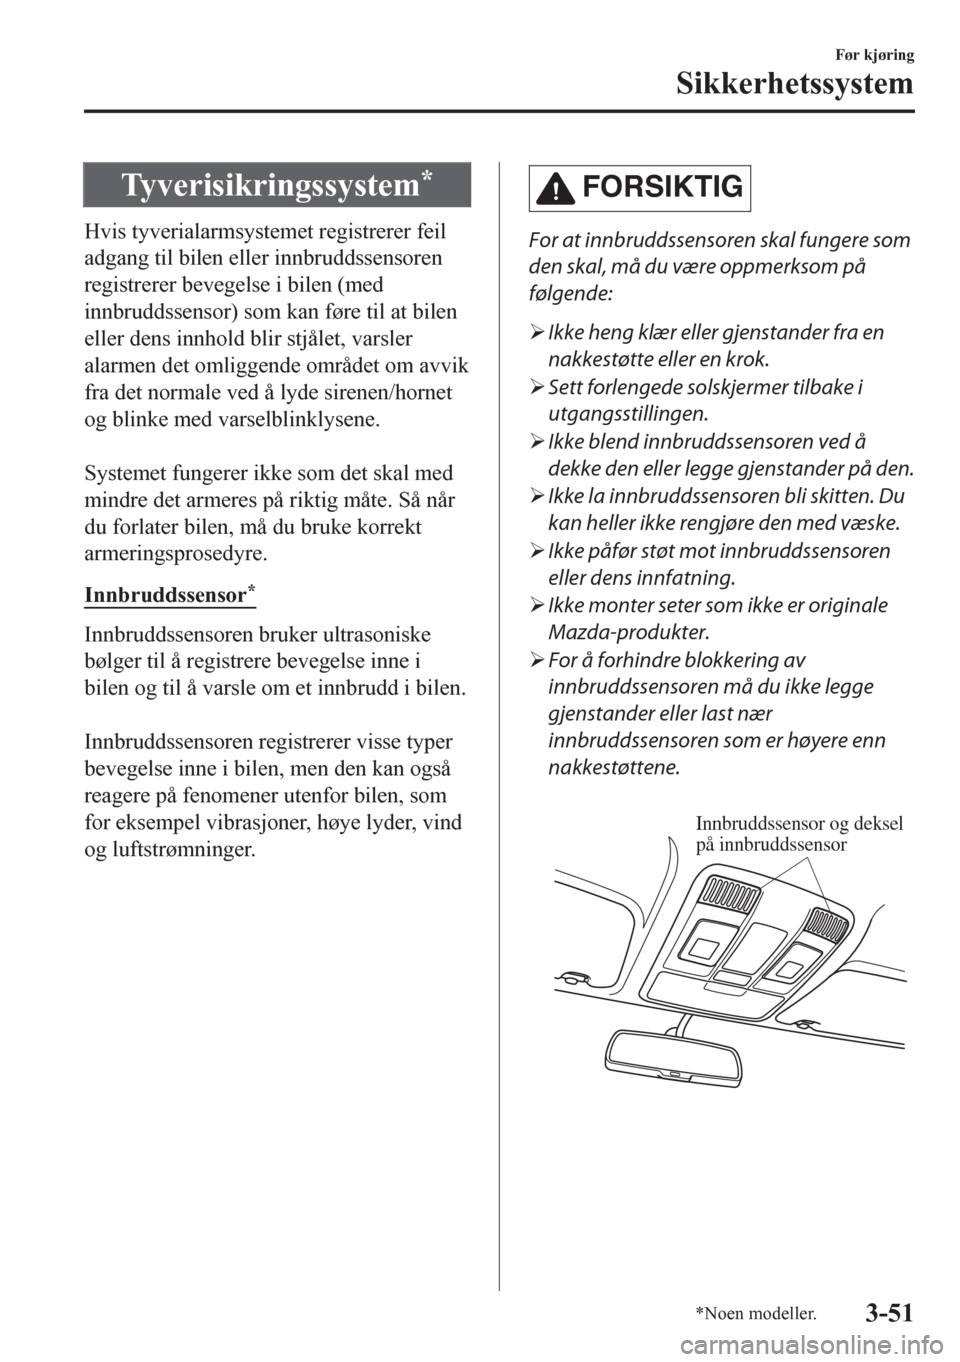 MAZDA MODEL CX-5 2018  Brukerhåndbok (in Norwegian) Tyverisikringssystem*
Hvis tyverialarmsystemet registrerer feil
adgang til bilen eller innbruddssensoren
registrerer bevegelse i bilen (med
innbruddssensor) som kan føre til at bilen
eller dens innho